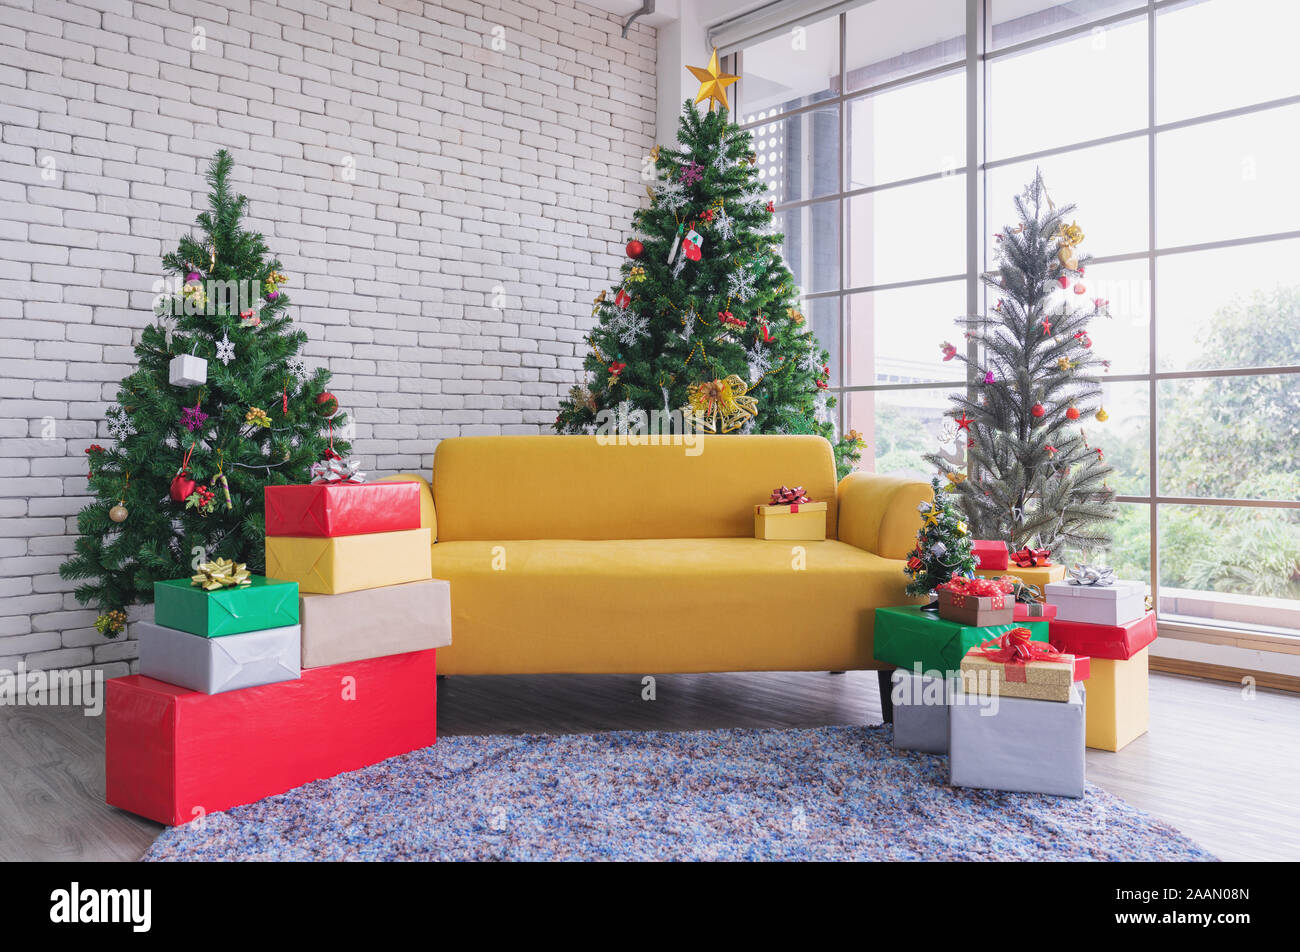 Christmas living room, Yellow sofa with Christmas trees and Christmas decorations Stock Photo